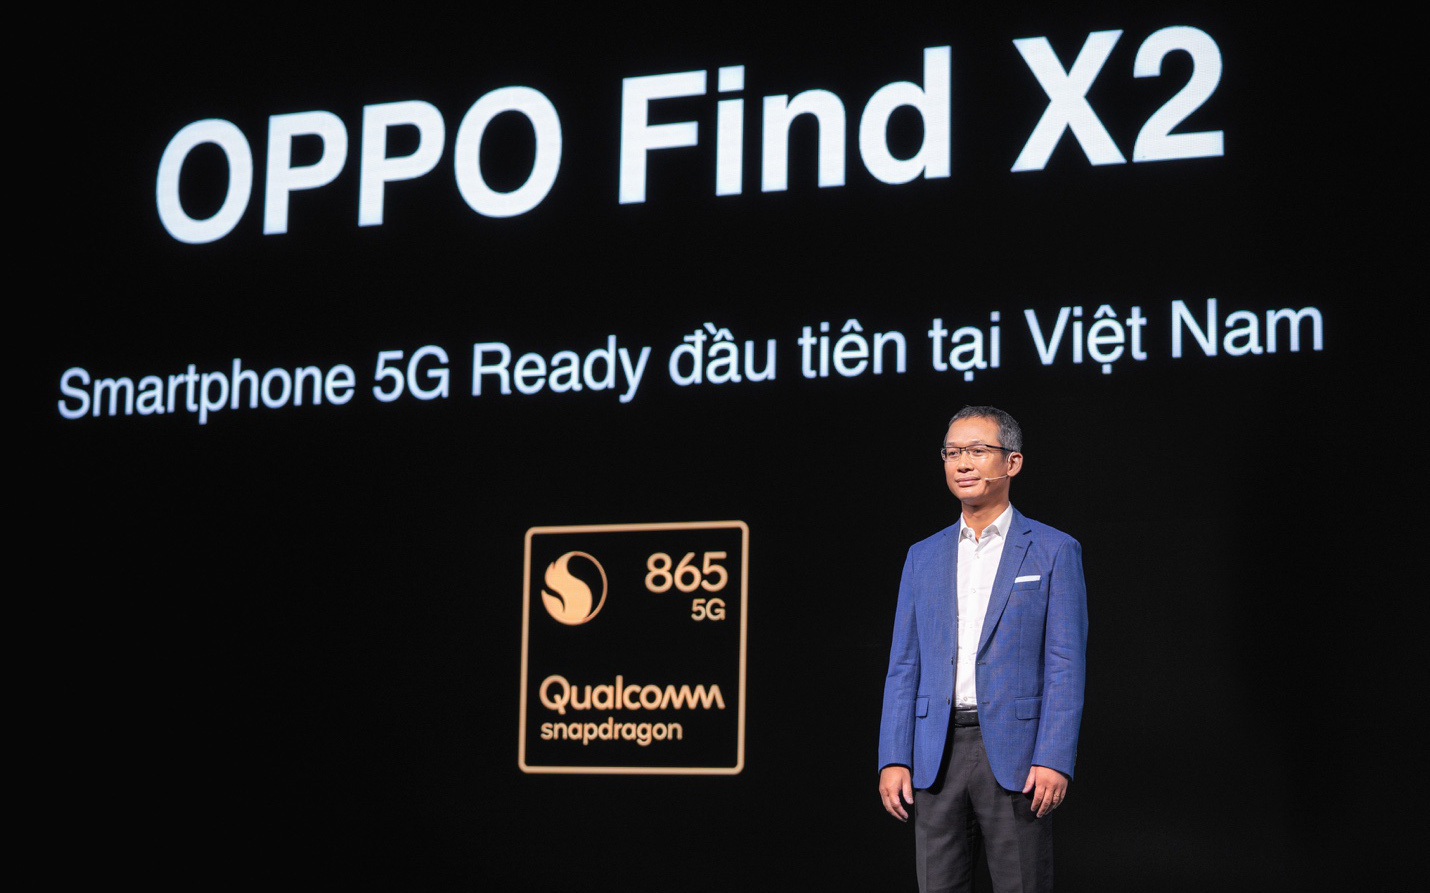 OPPO Find X2 - Flagship tiên phong dẫn đầu tương lai 5G tại Việt Nam